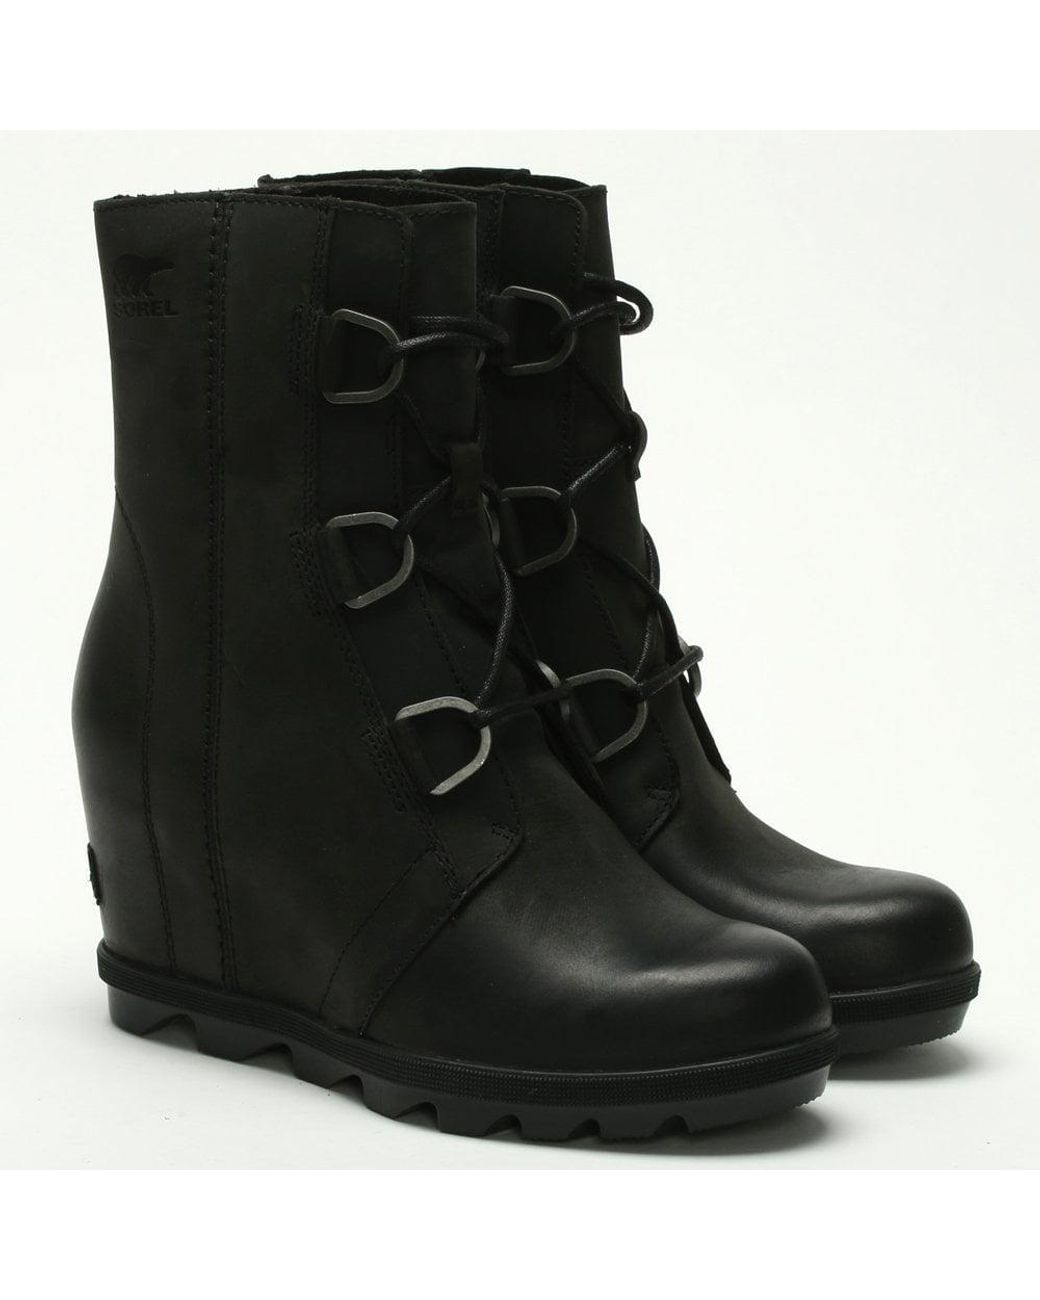 Sorel Joan Of Arctic Wedge Ii Boots in Black | Lyst